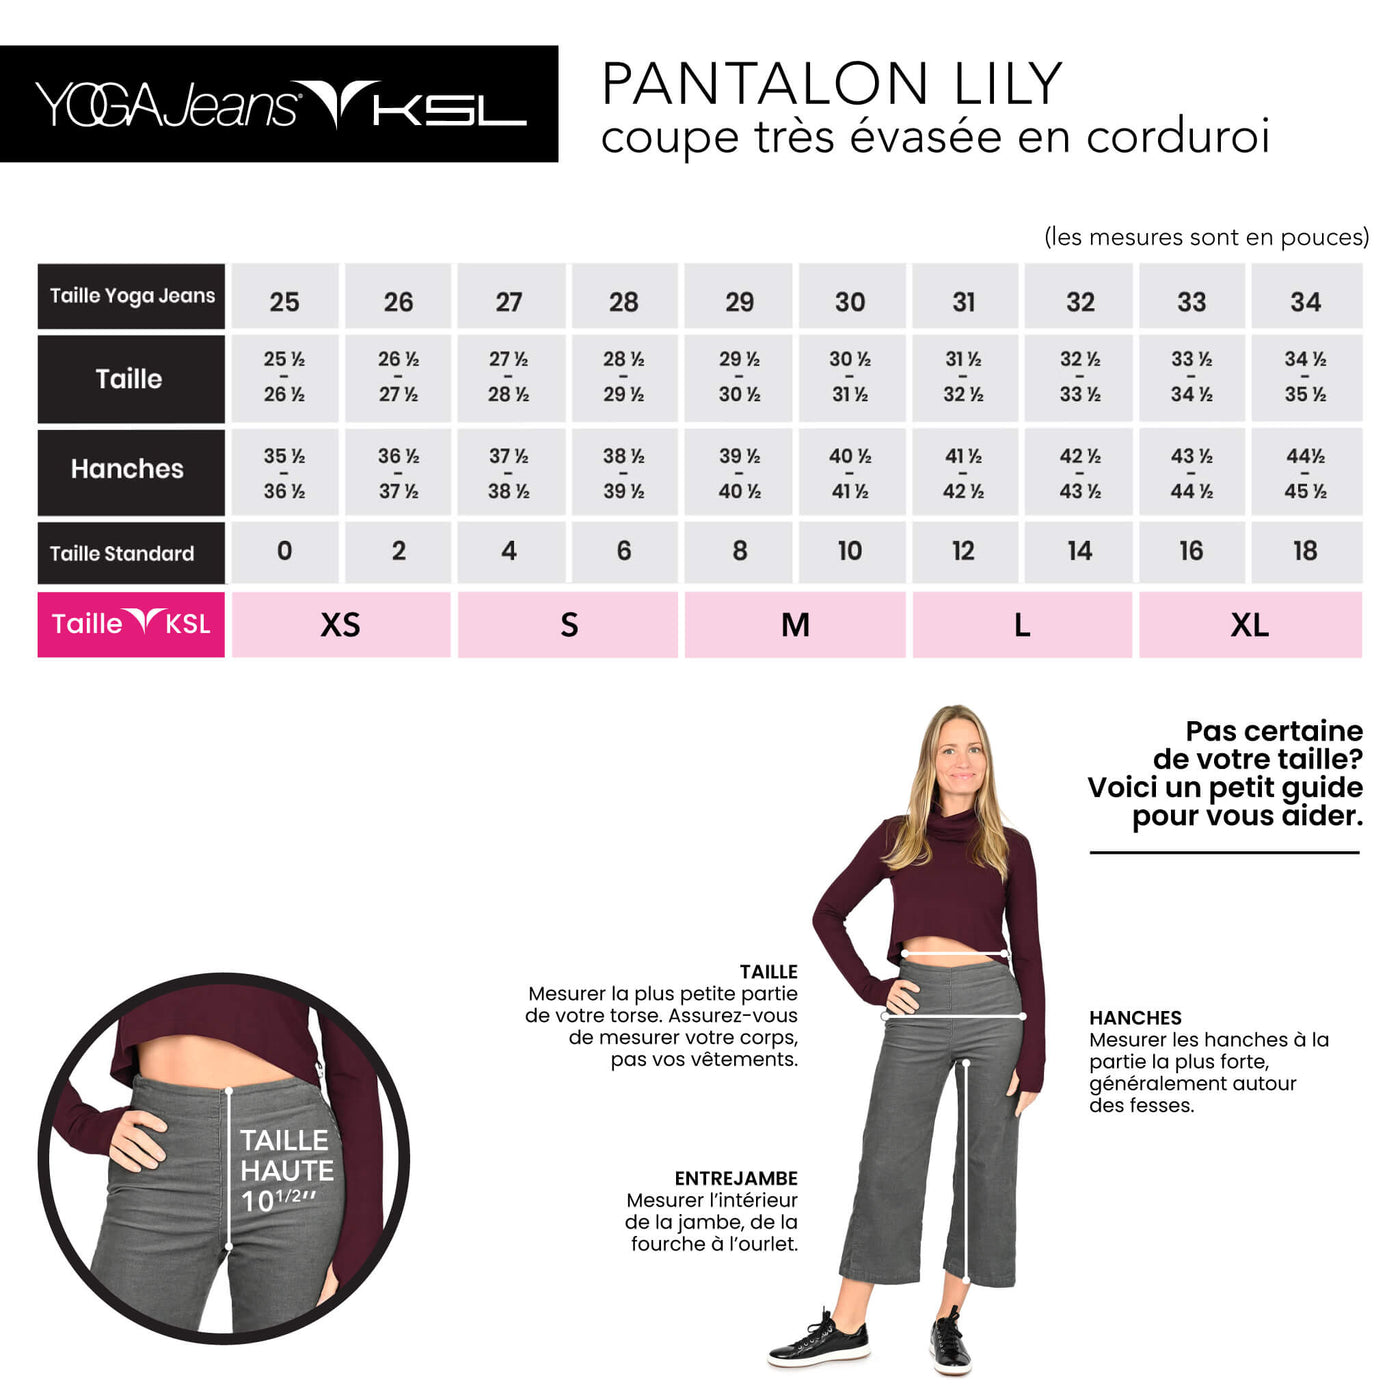 Lily - Pantalon à jambe large en corduroi - YOGA Jeans & KSL